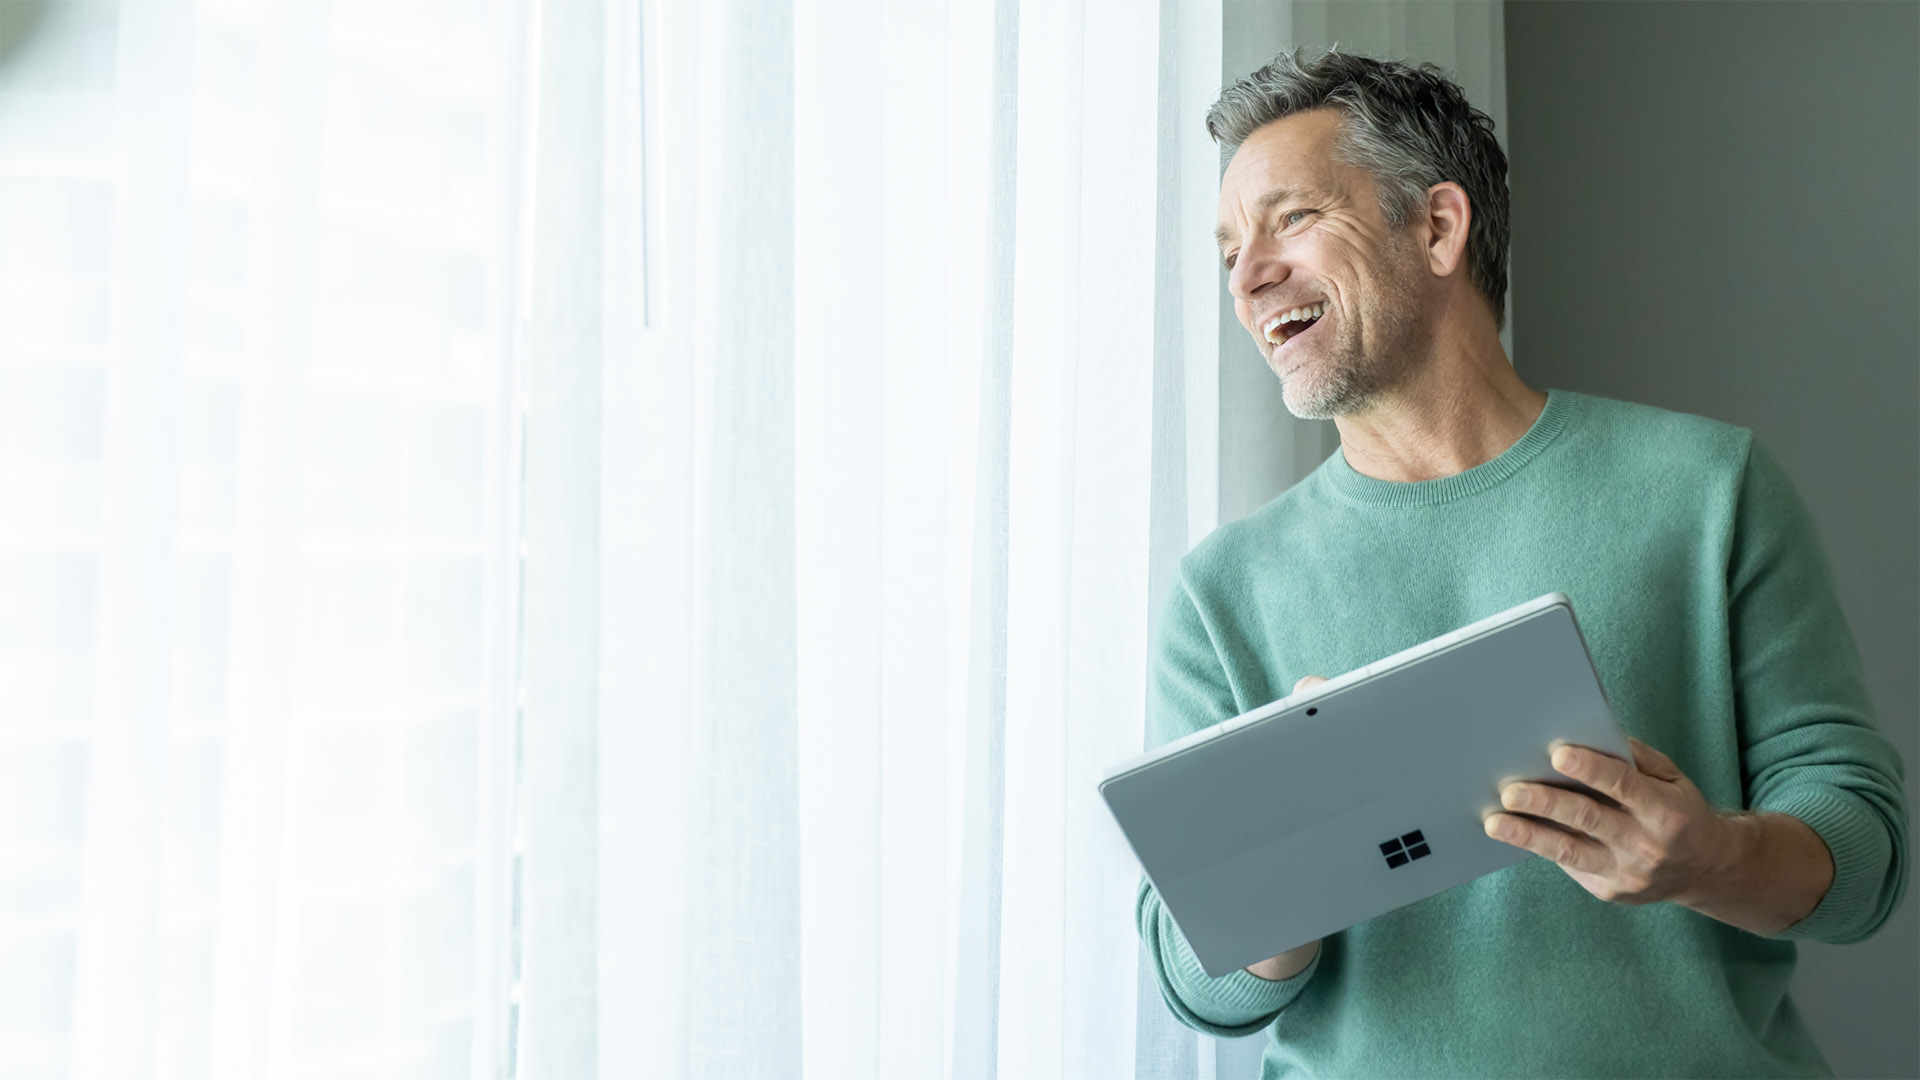 Egy férfi állva, mosolyogva néz ki az ablakon, miközben egy Surface készüléket tart a kezében